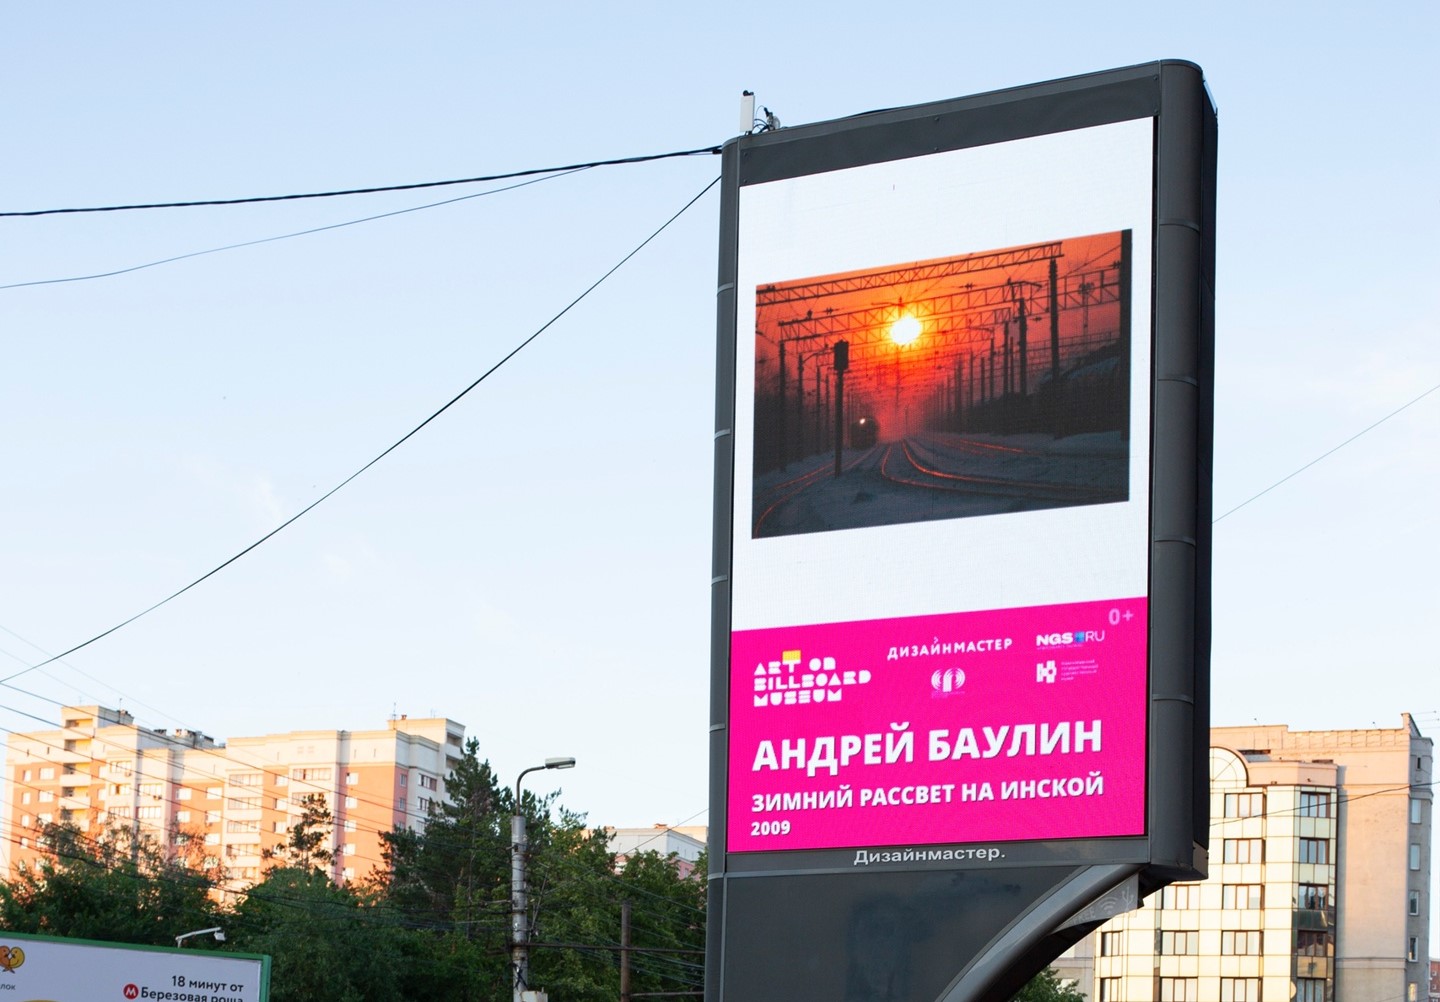 Новосибирск фотографический: продолжаются уличные выставки проекта Art on billboard museum